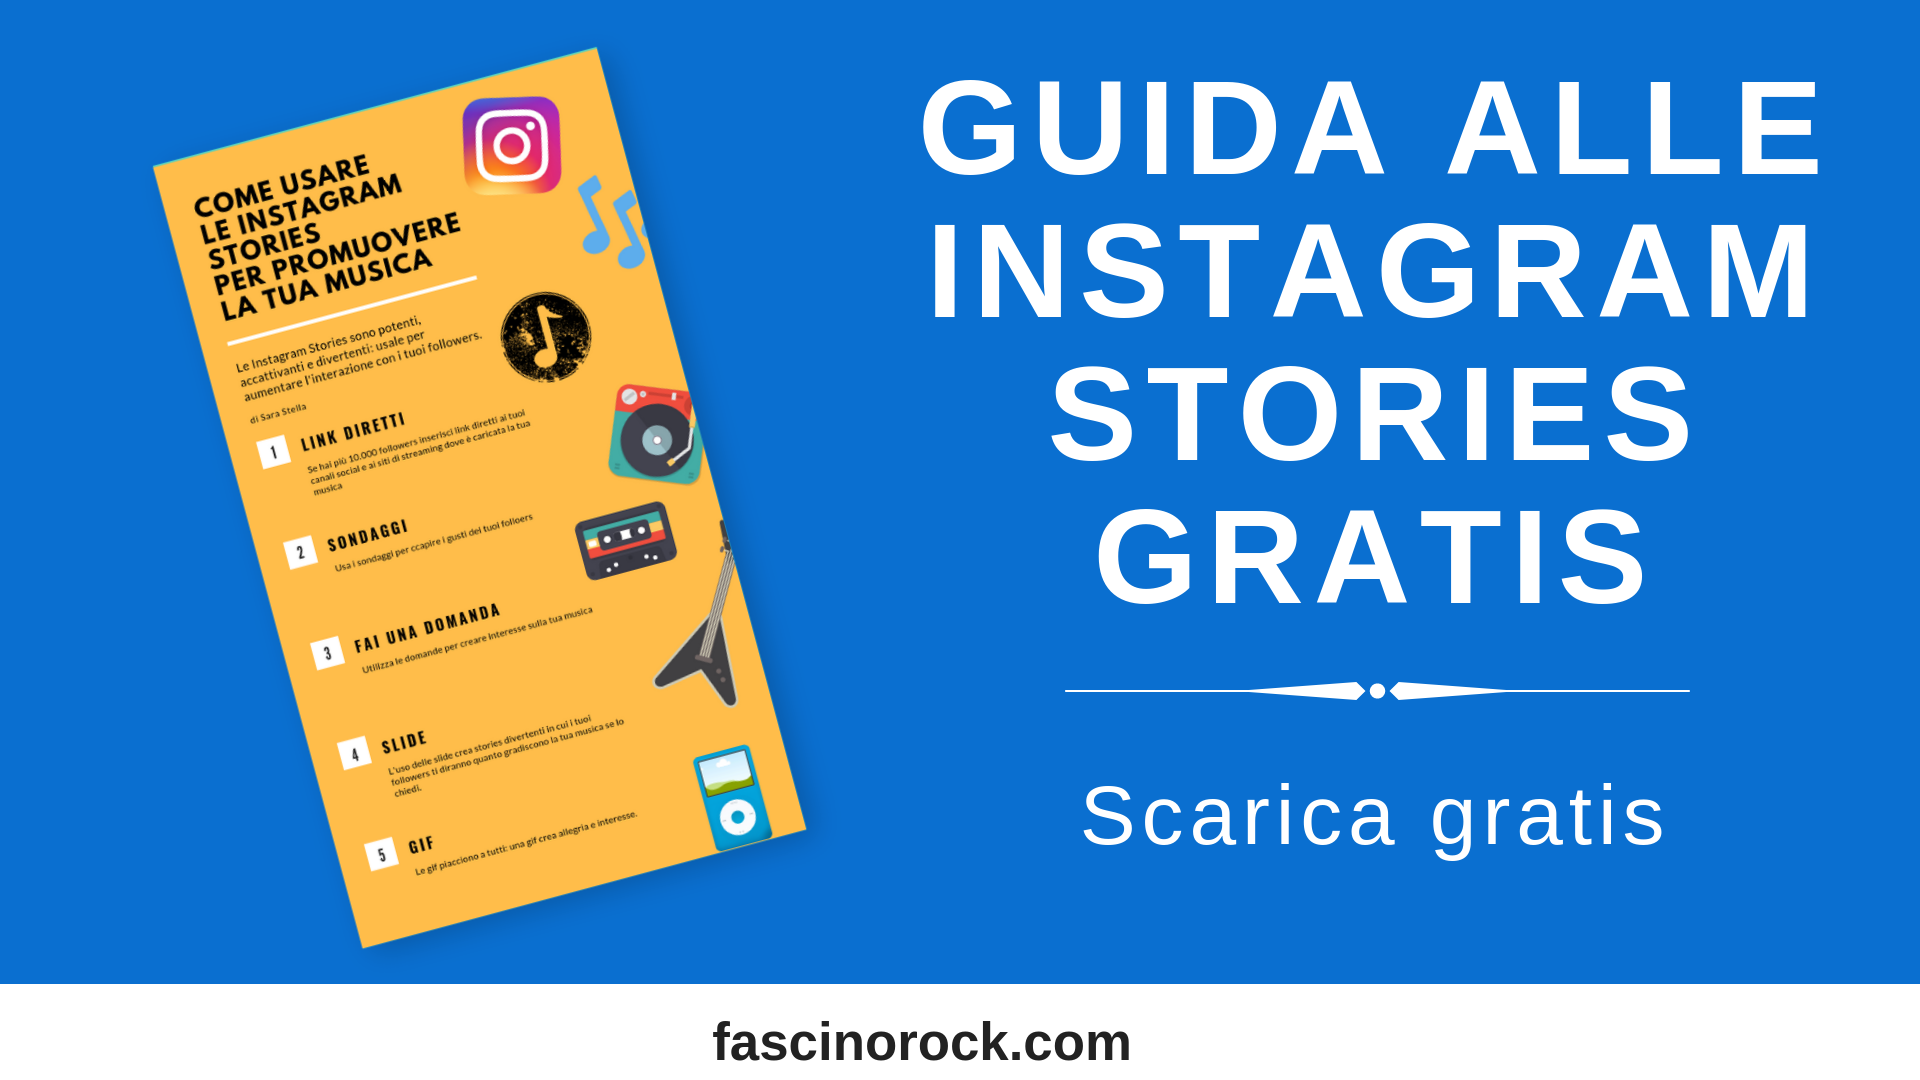 Come Usare Le Instagram Stories Per Promuovere La Tua Musica Fascino Rock